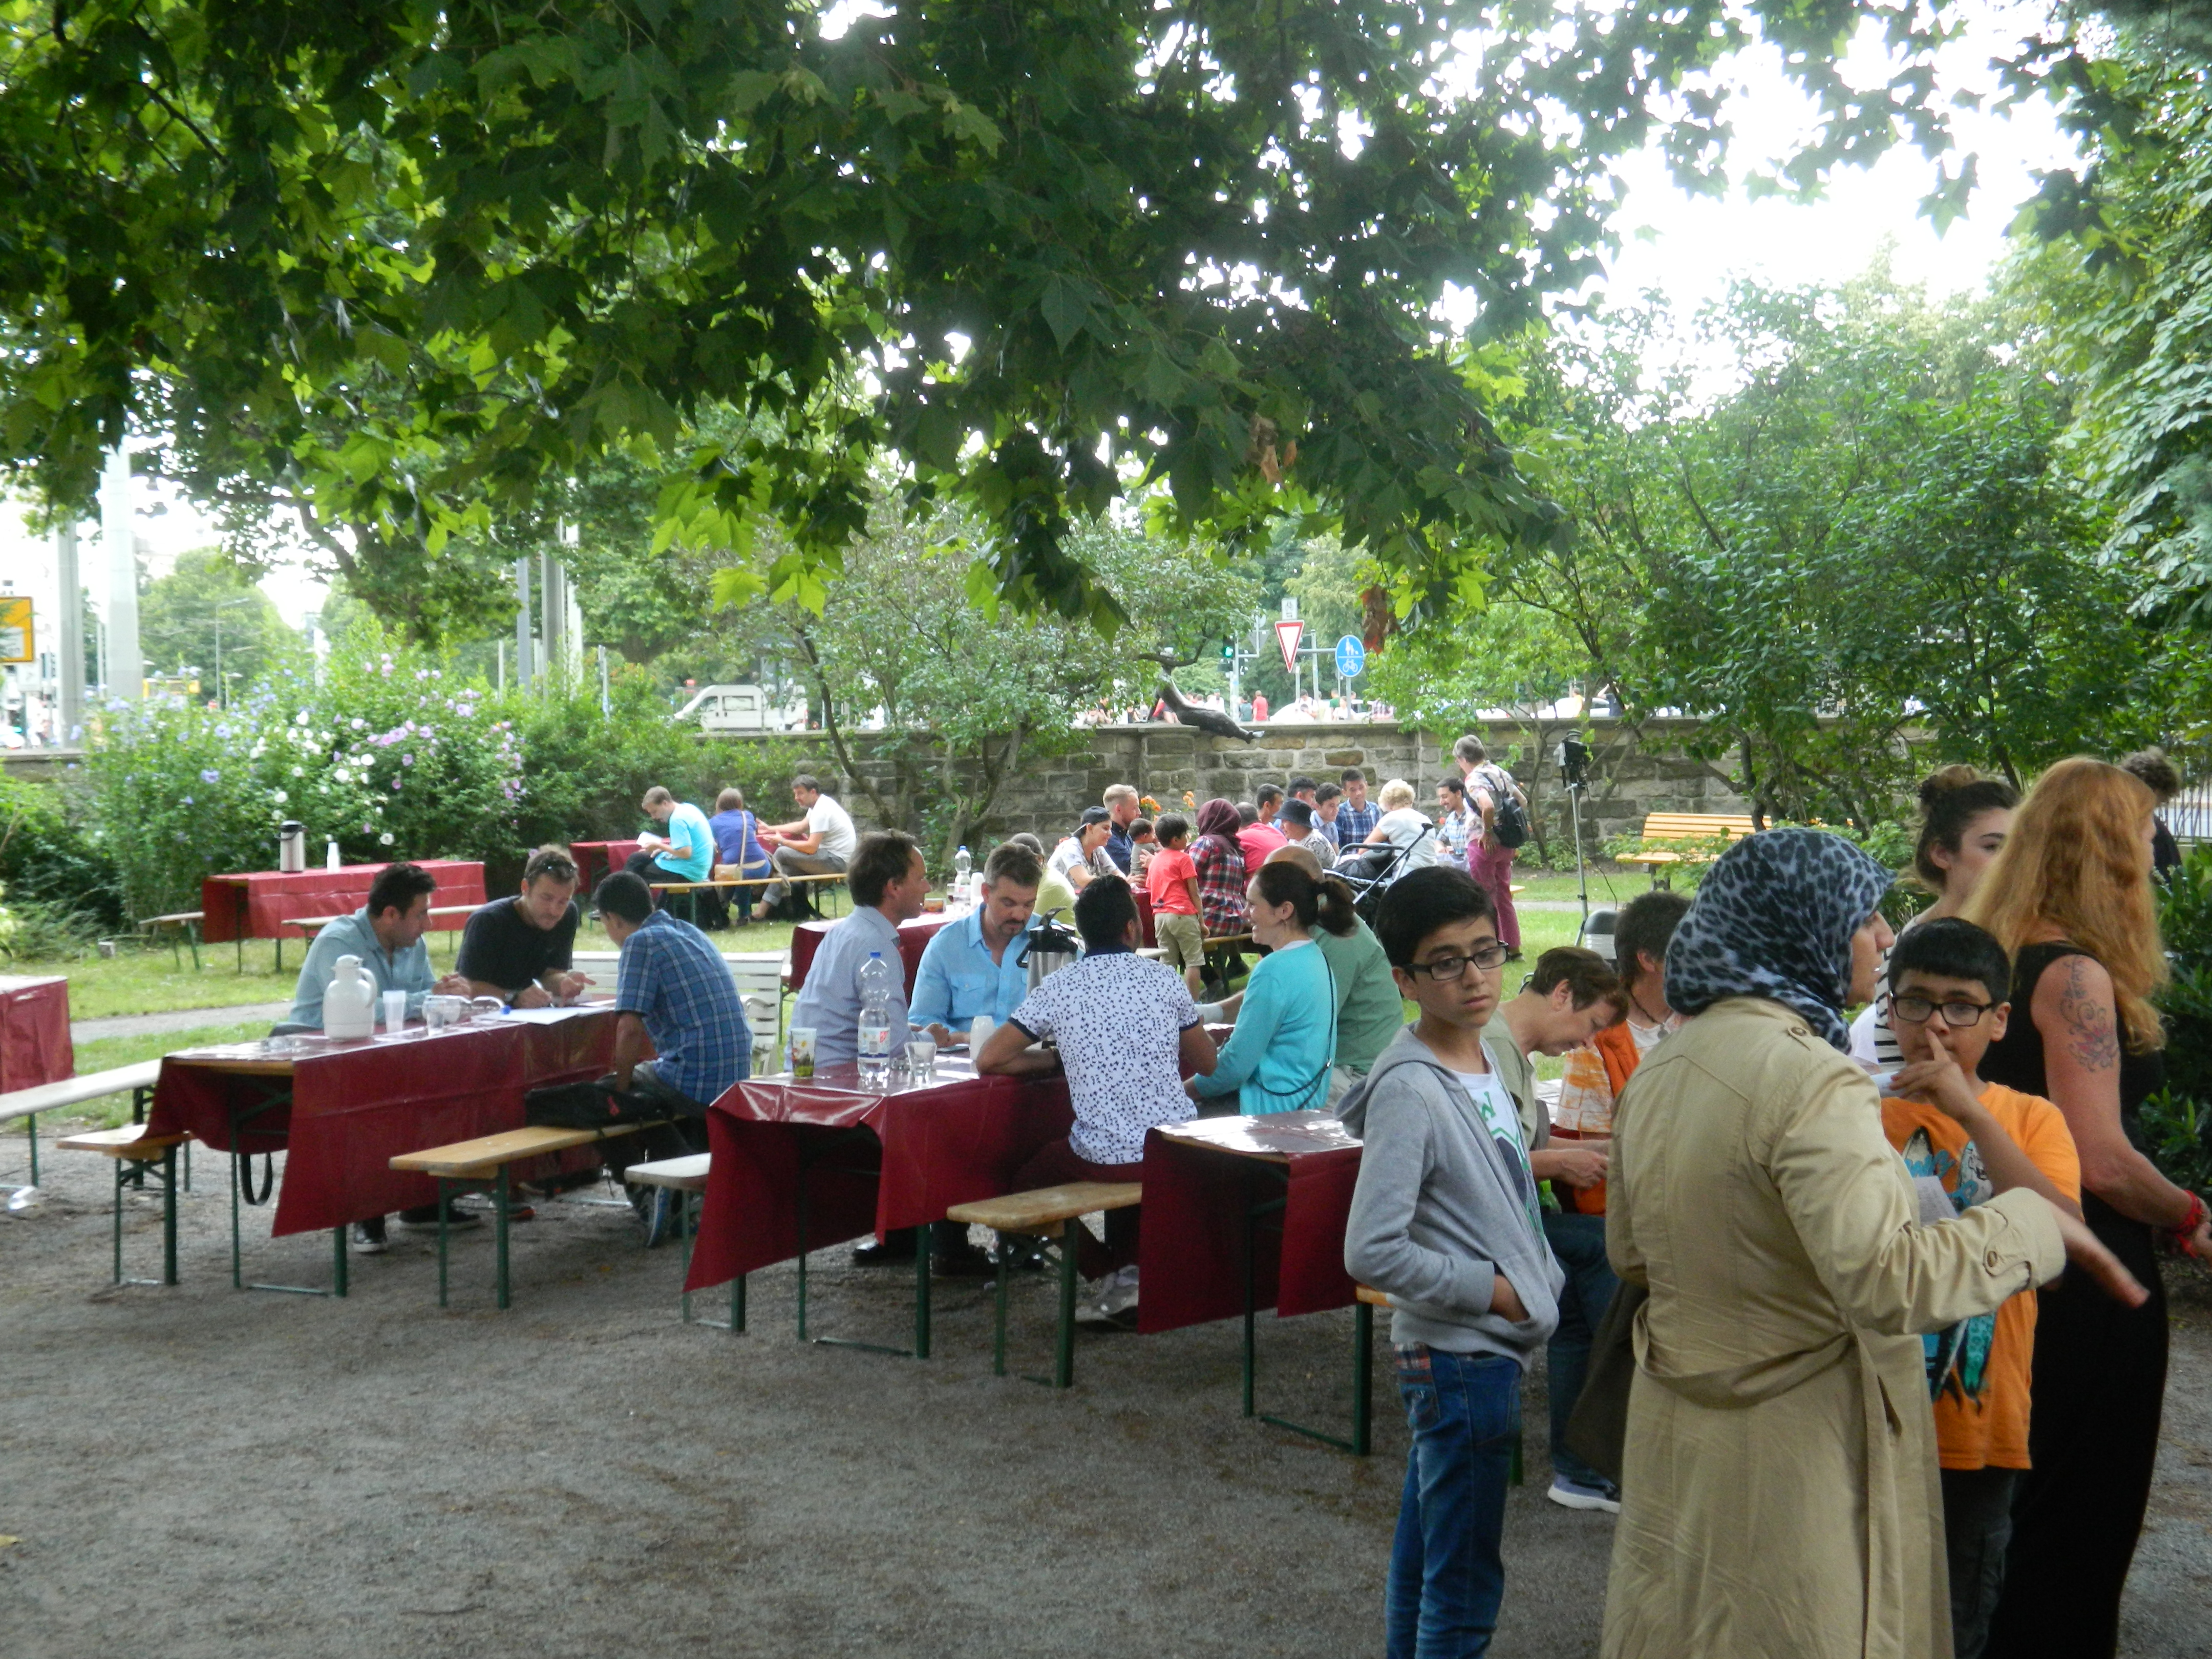 Tische im Freien, Menschen stehen in Gruppen